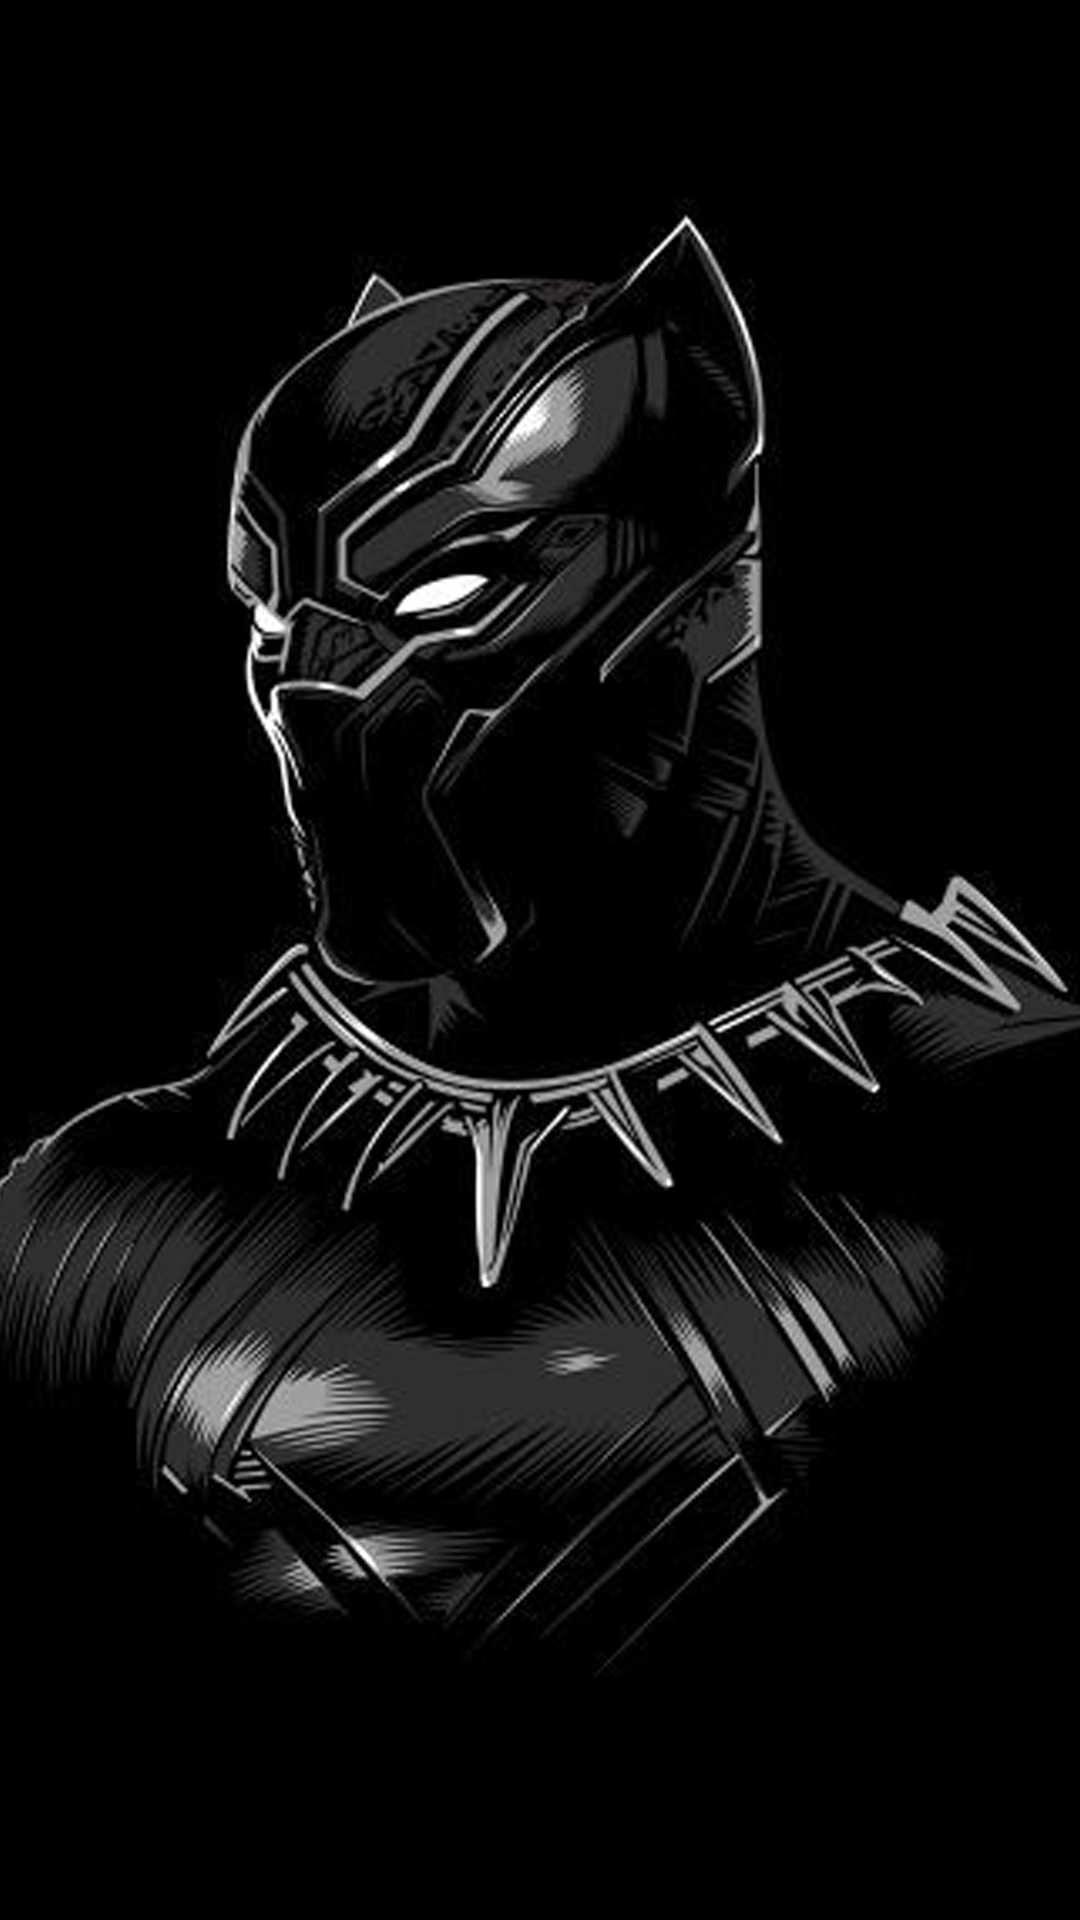 Black Panther iPhone Wallpaper Free Black Panther